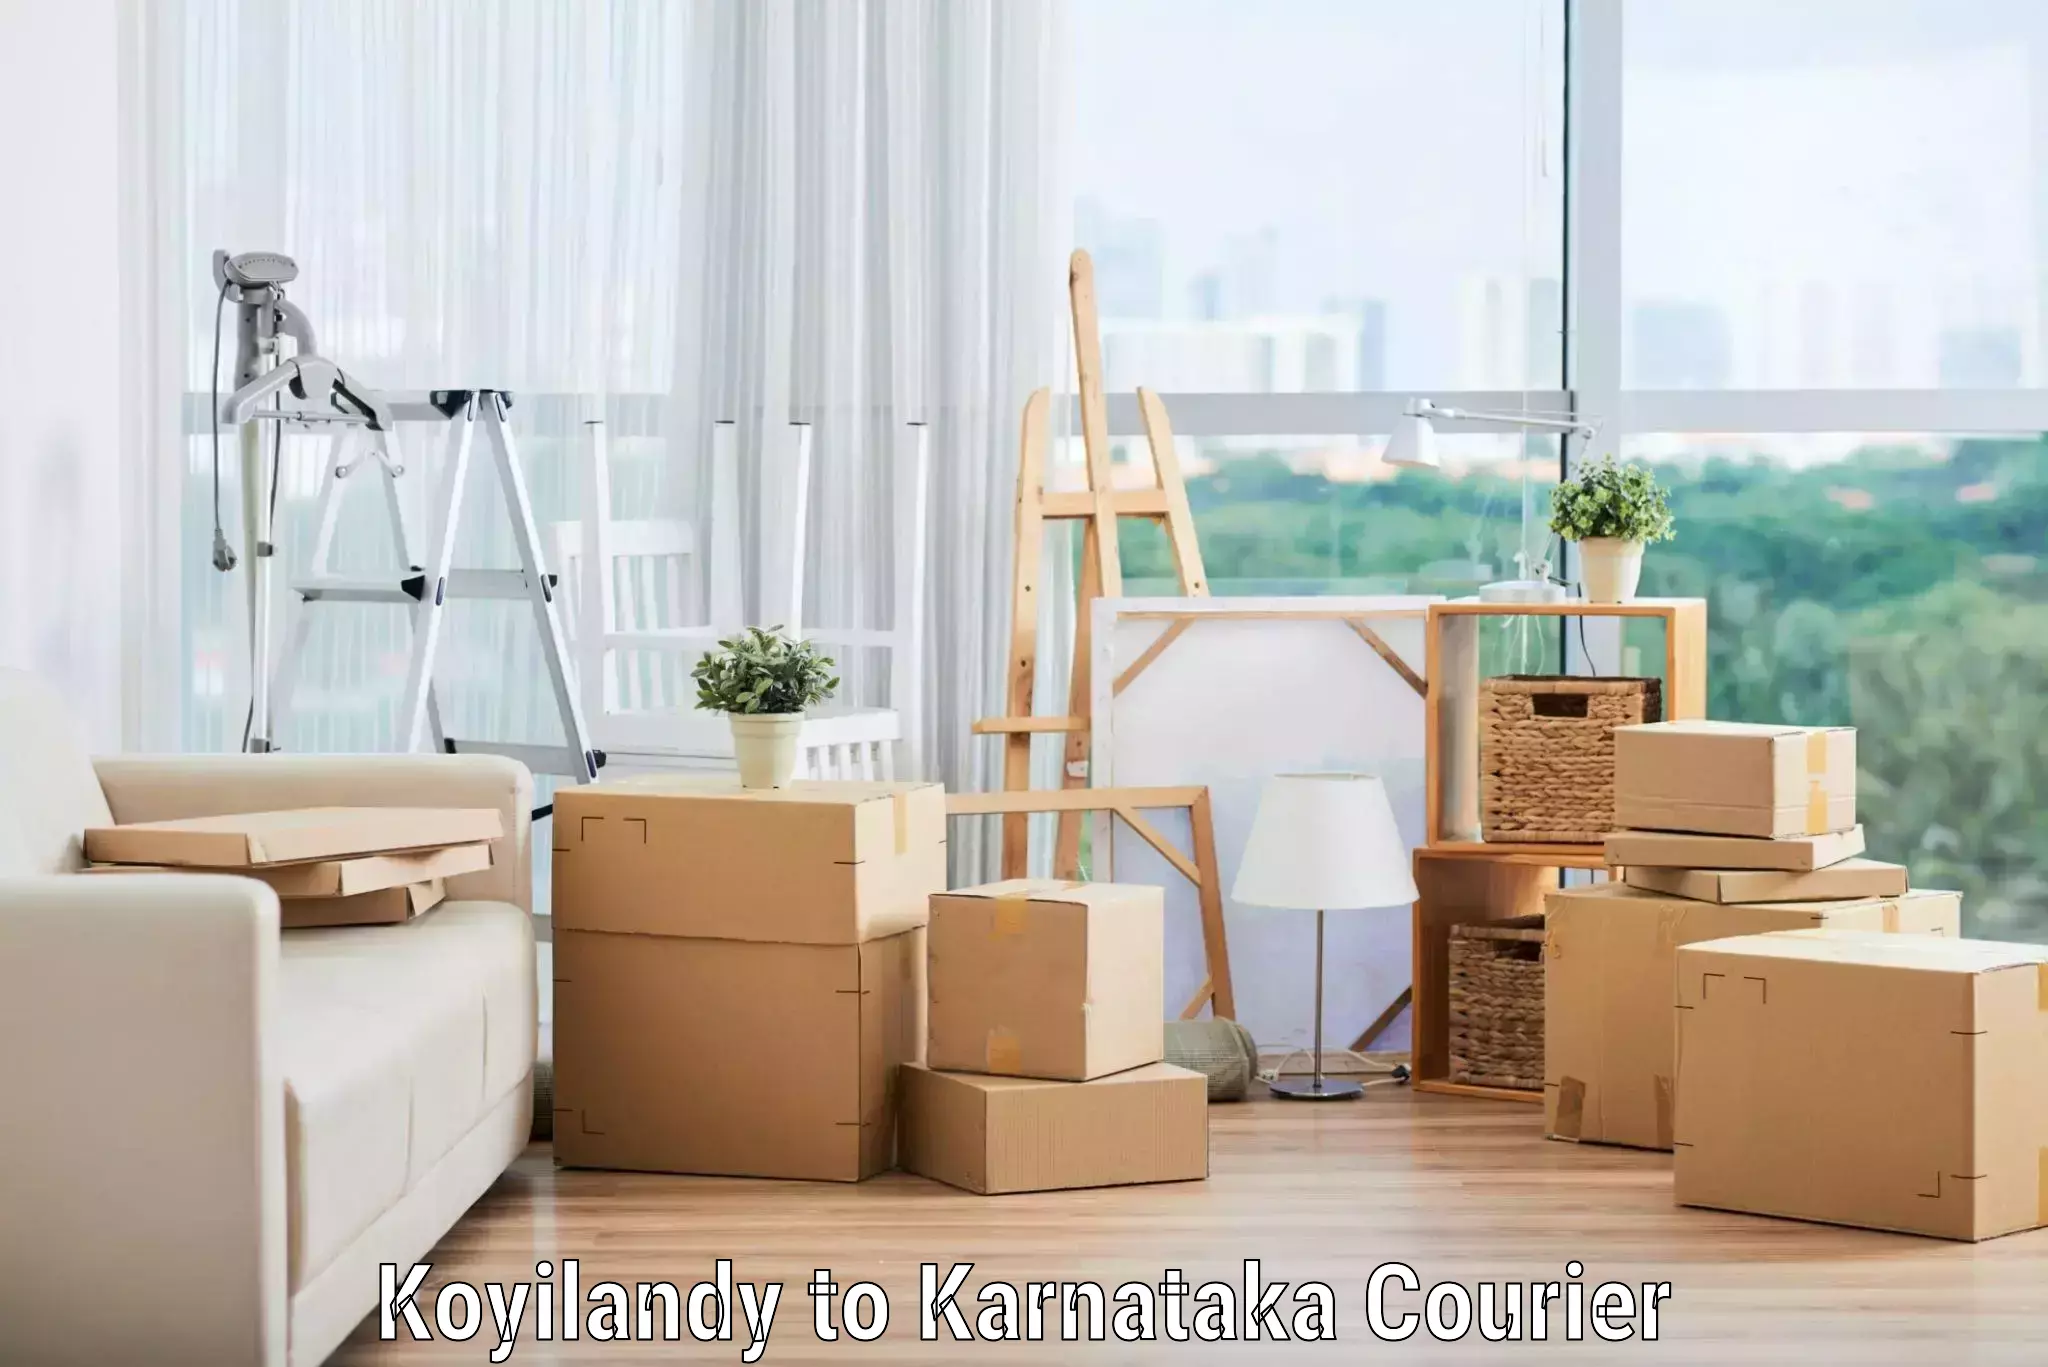 Quality moving company Koyilandy to Mangalore University Mangalagangotri